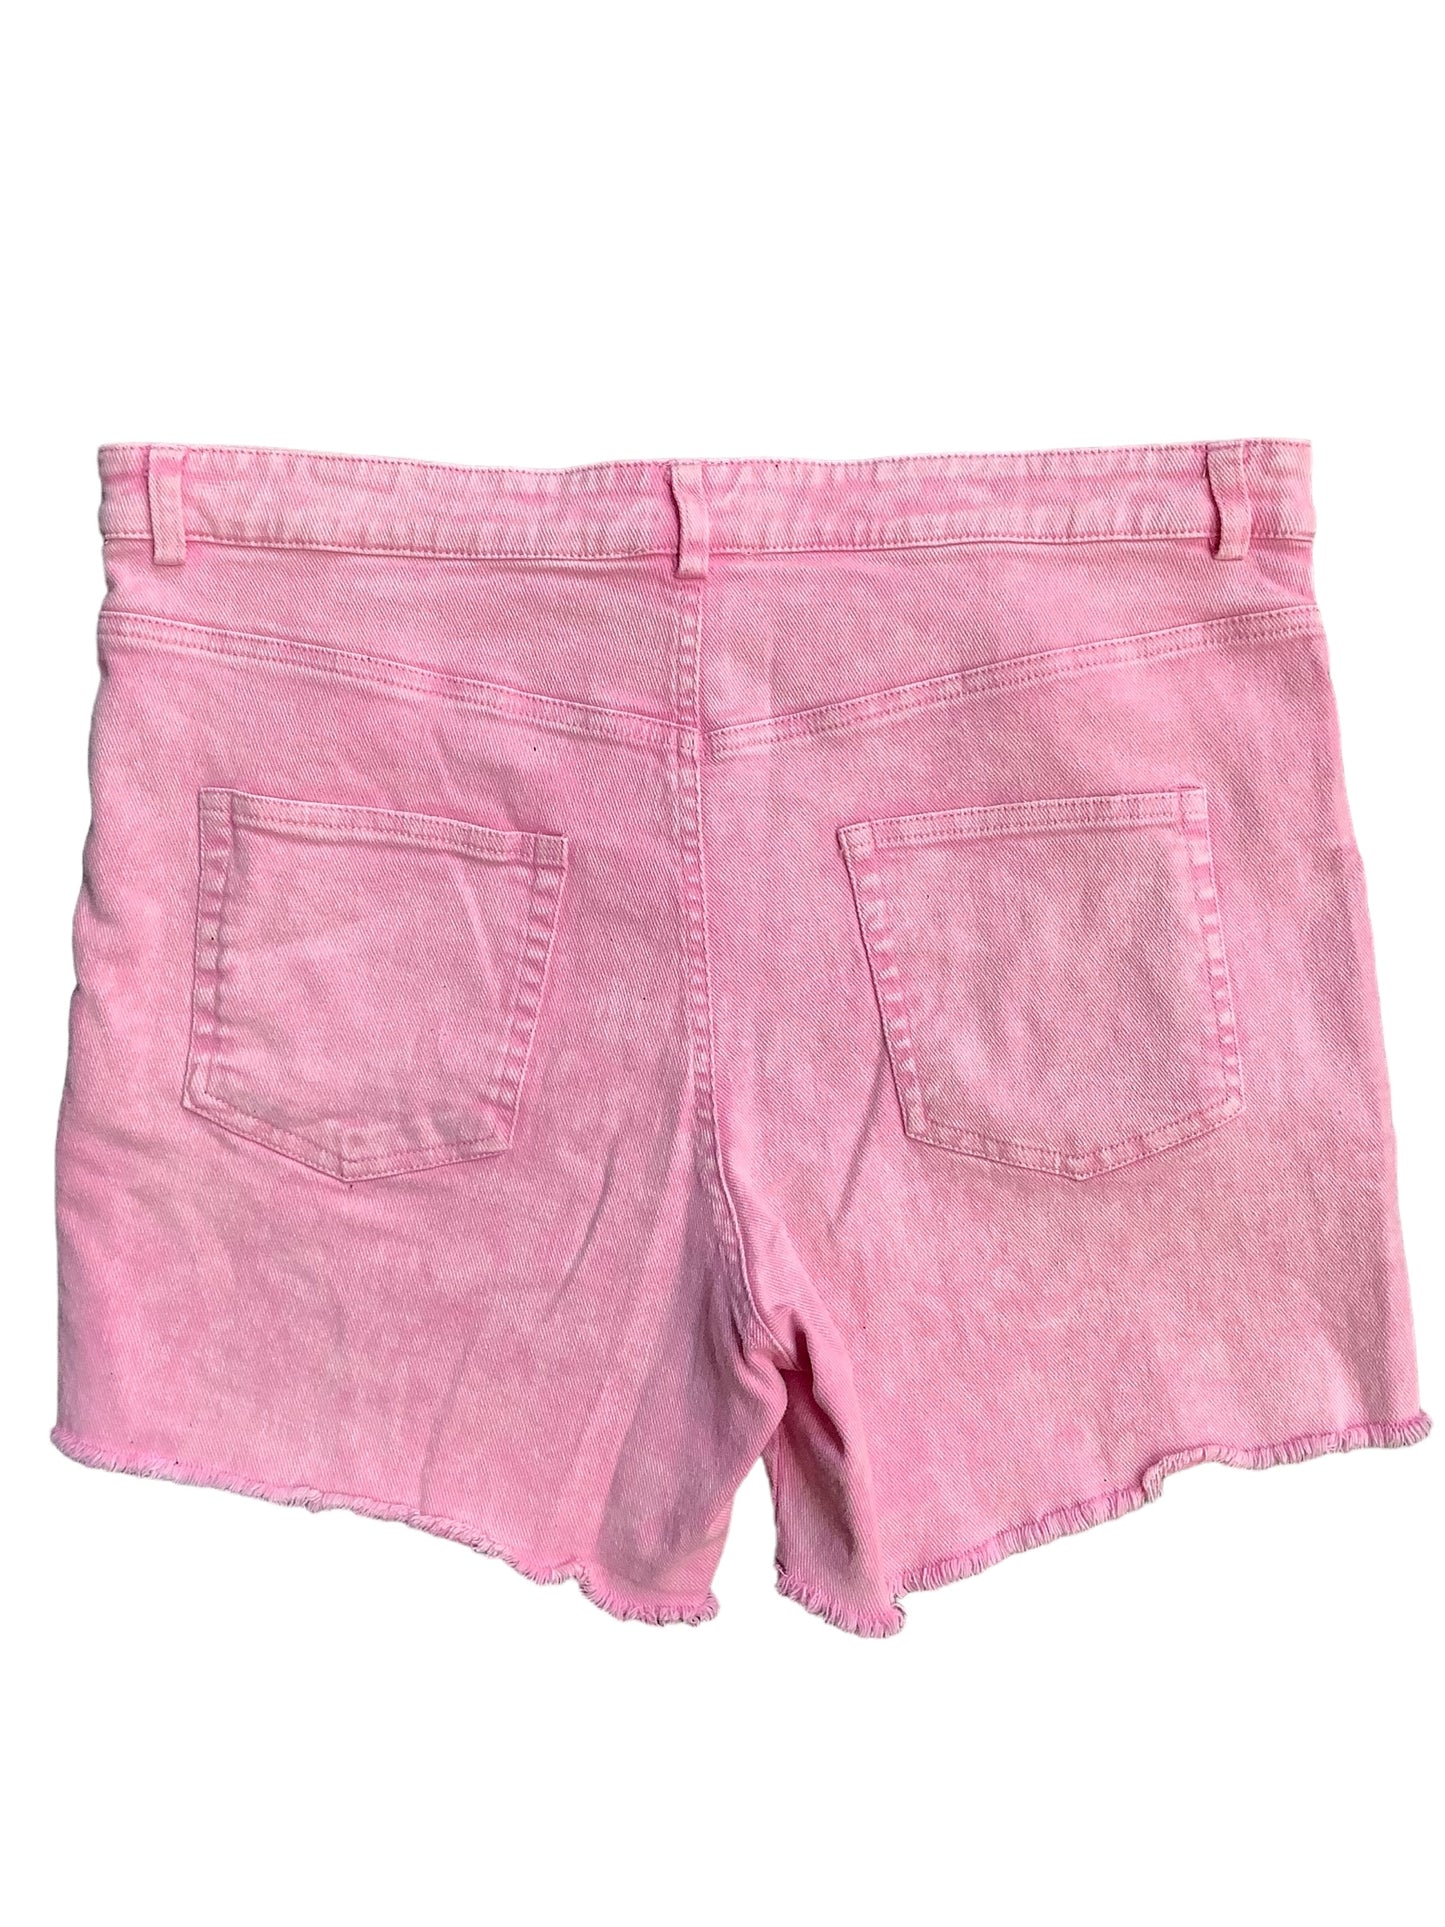 Shorts By La Miel  Size: Xl